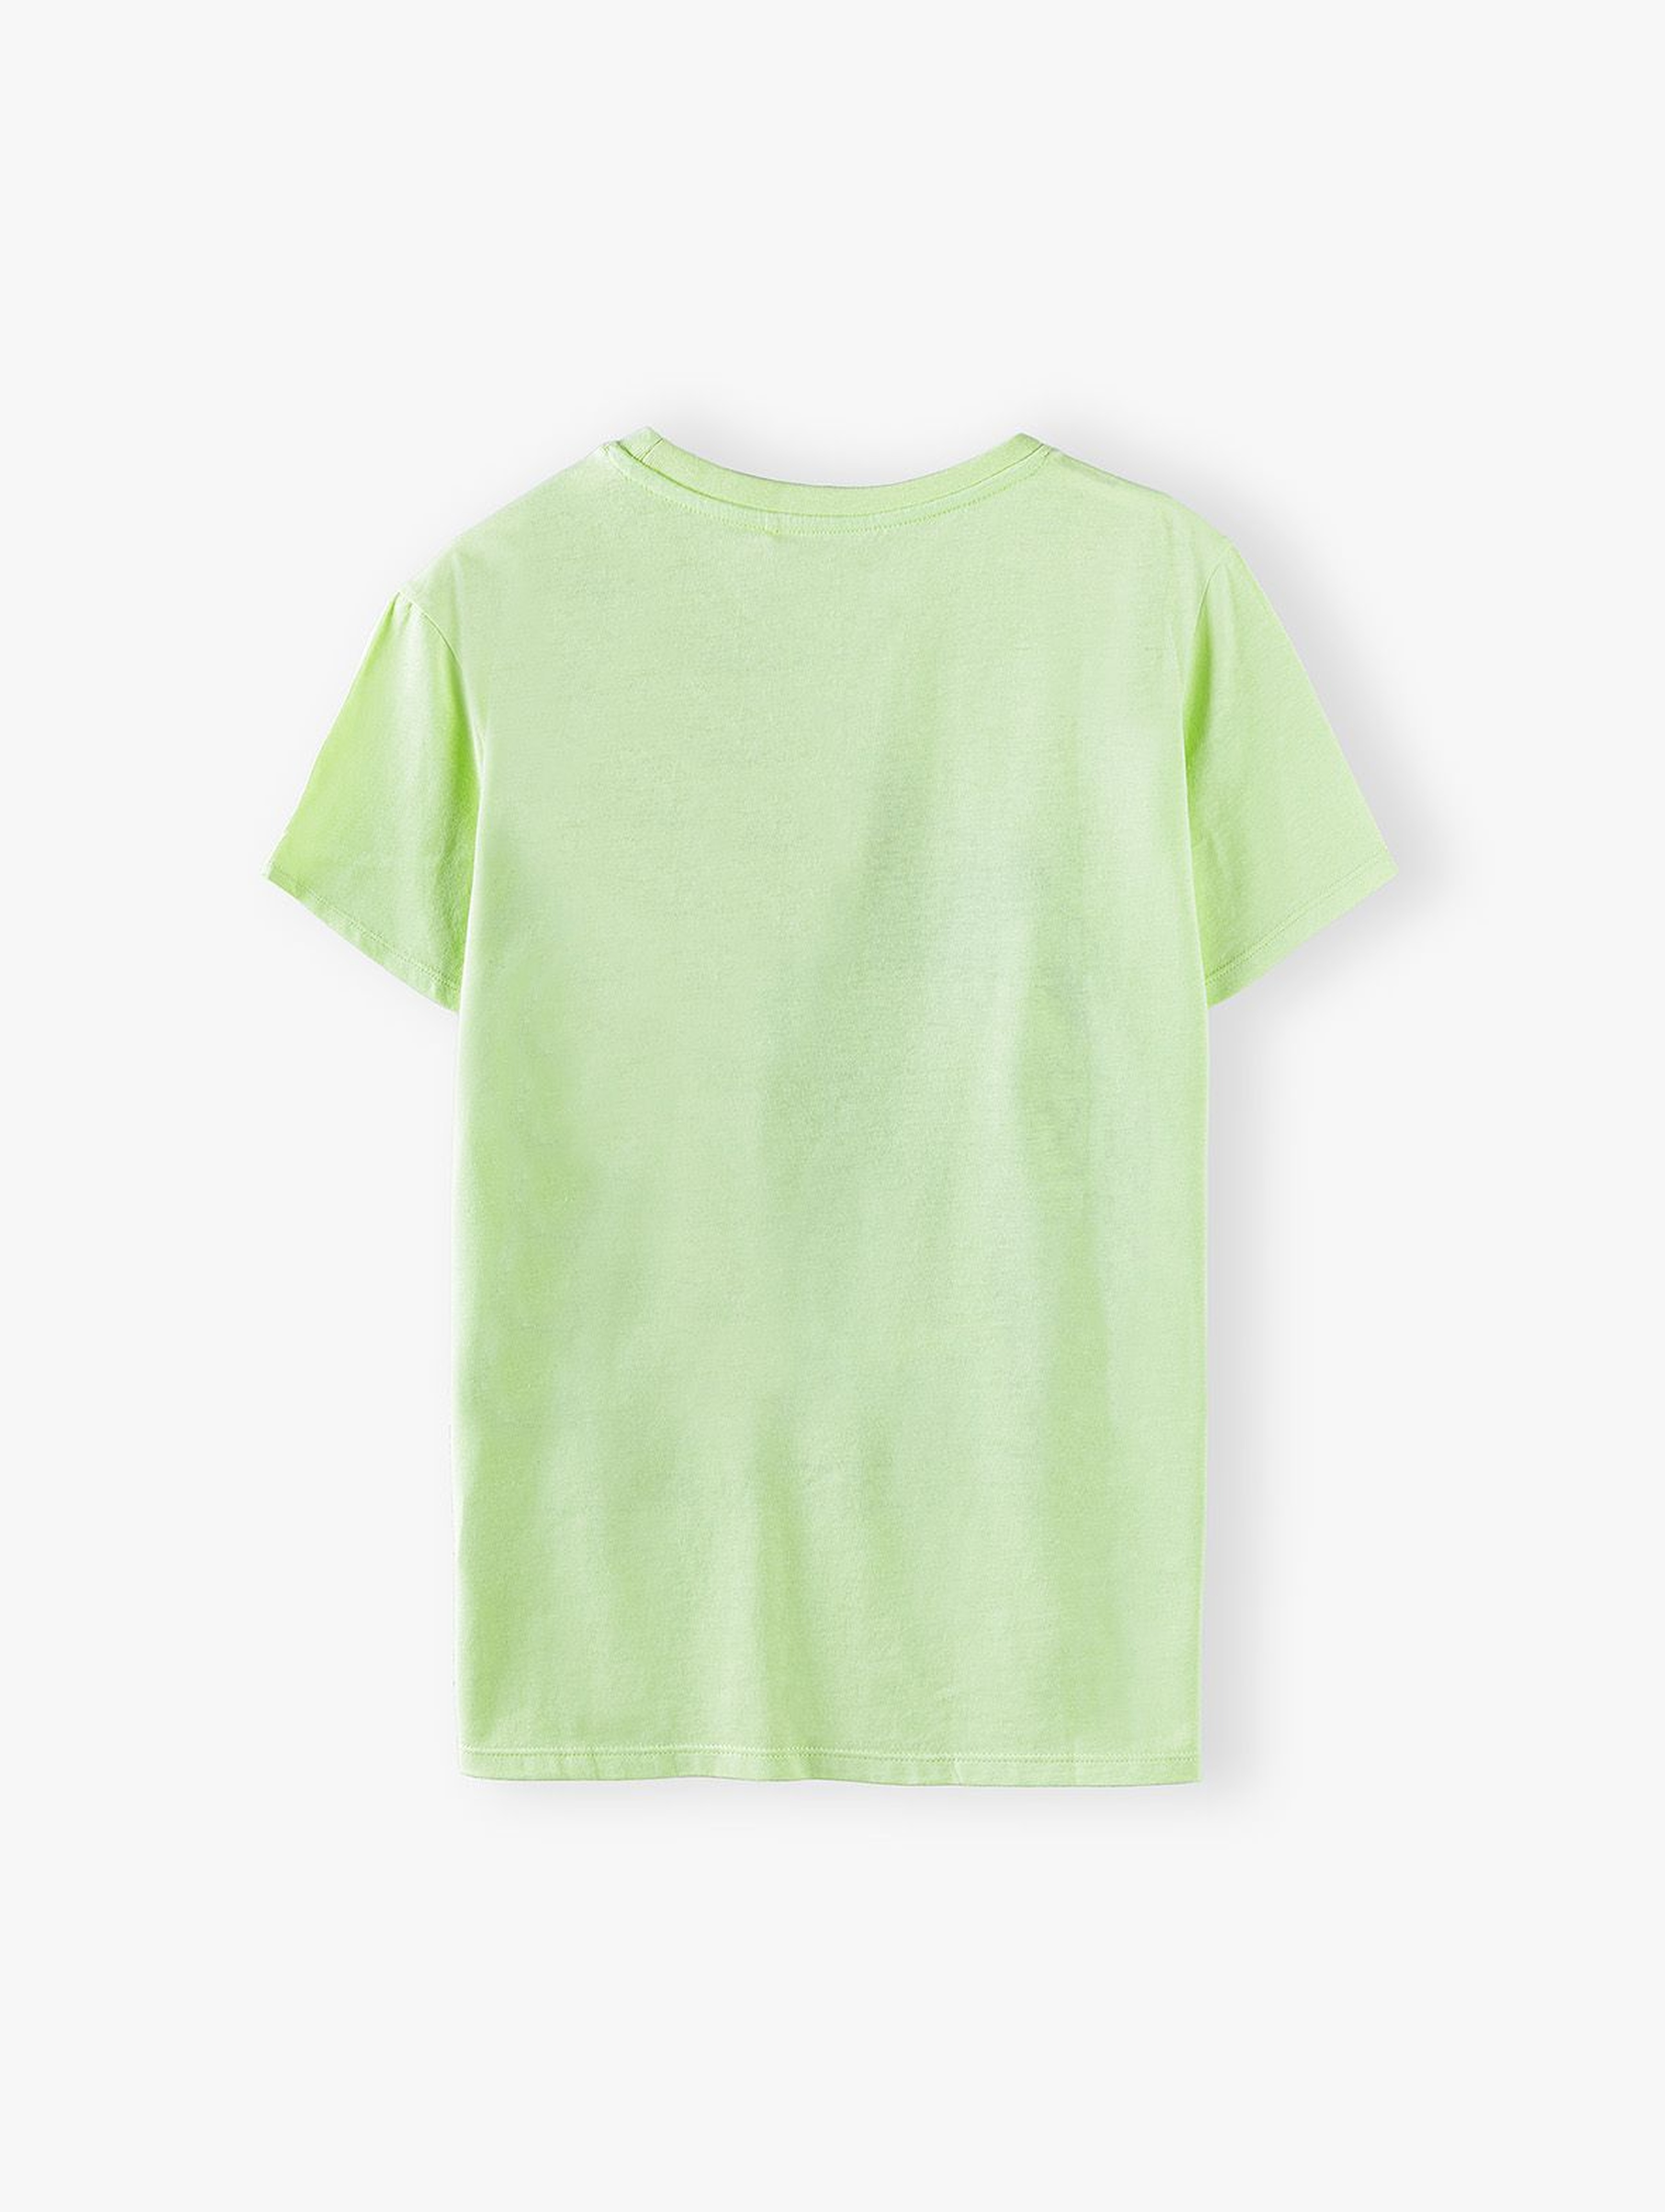 T-shirt chłopięcy w kolorze limonkowym z nadrukiem